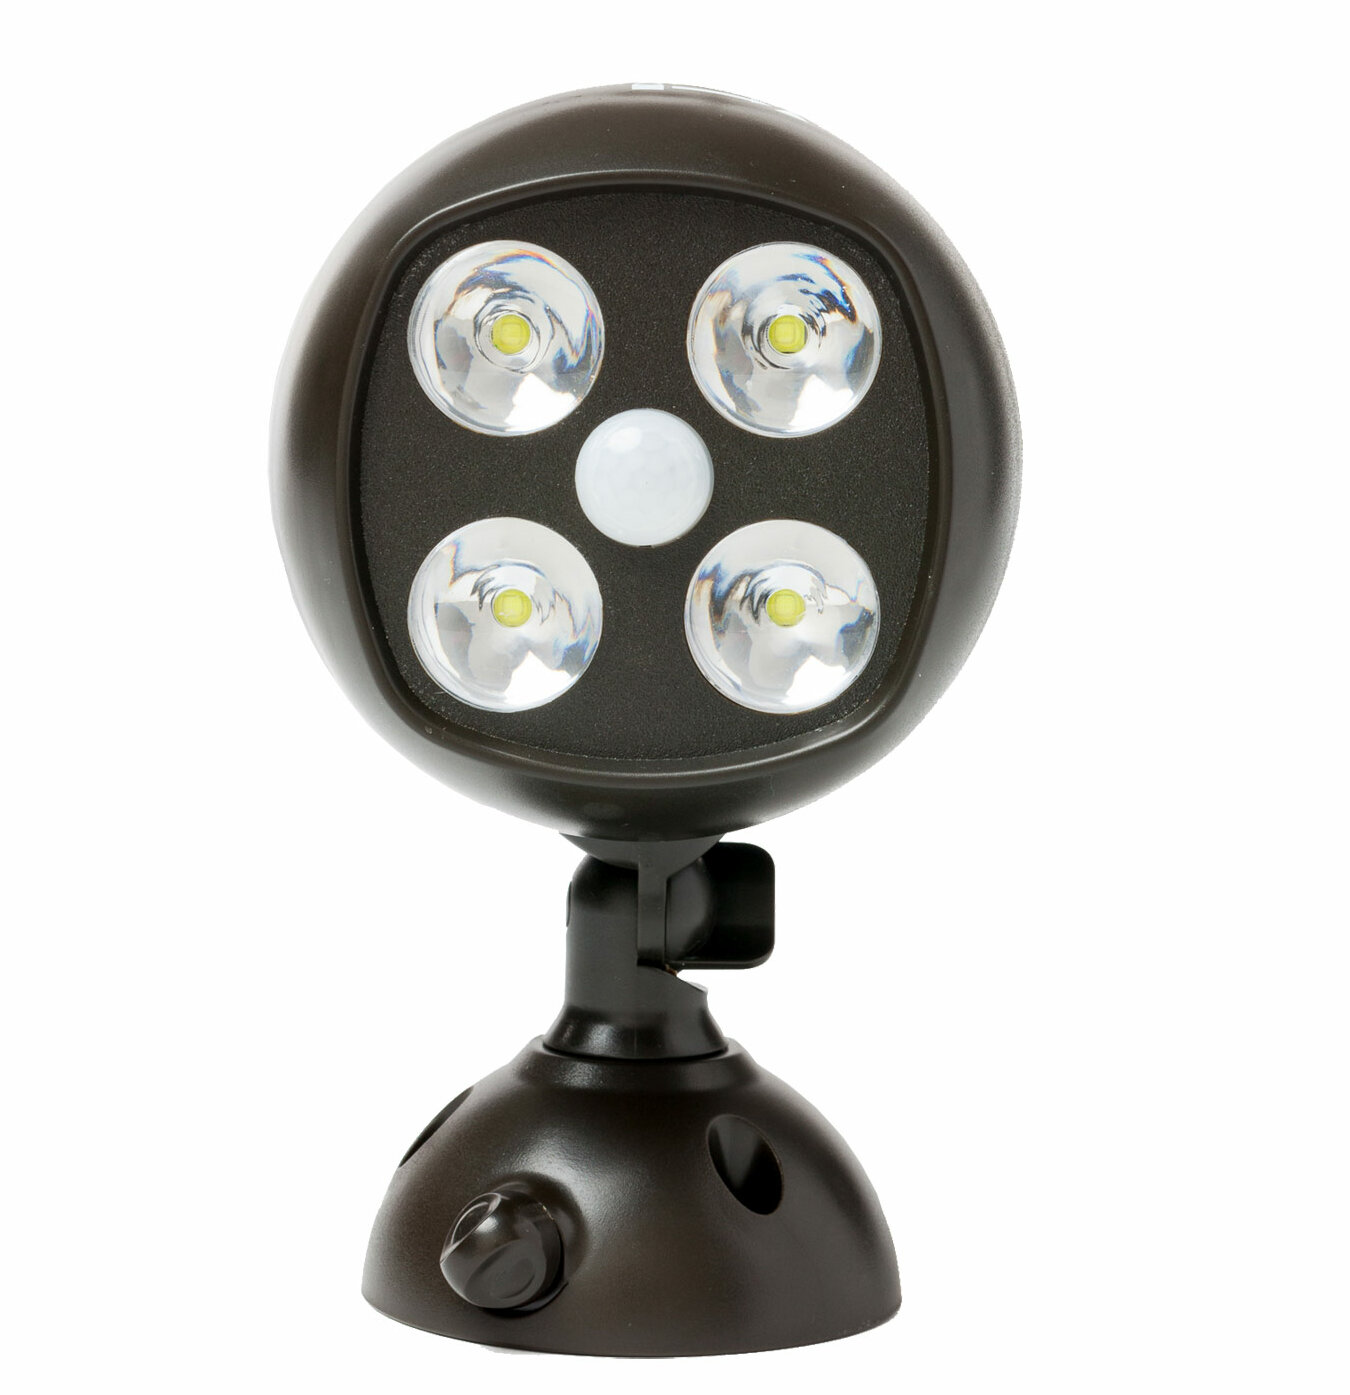 6 LED, 3 Pack Cordless Battery-Powered LED Night Criacr Motion Sensor Light, 